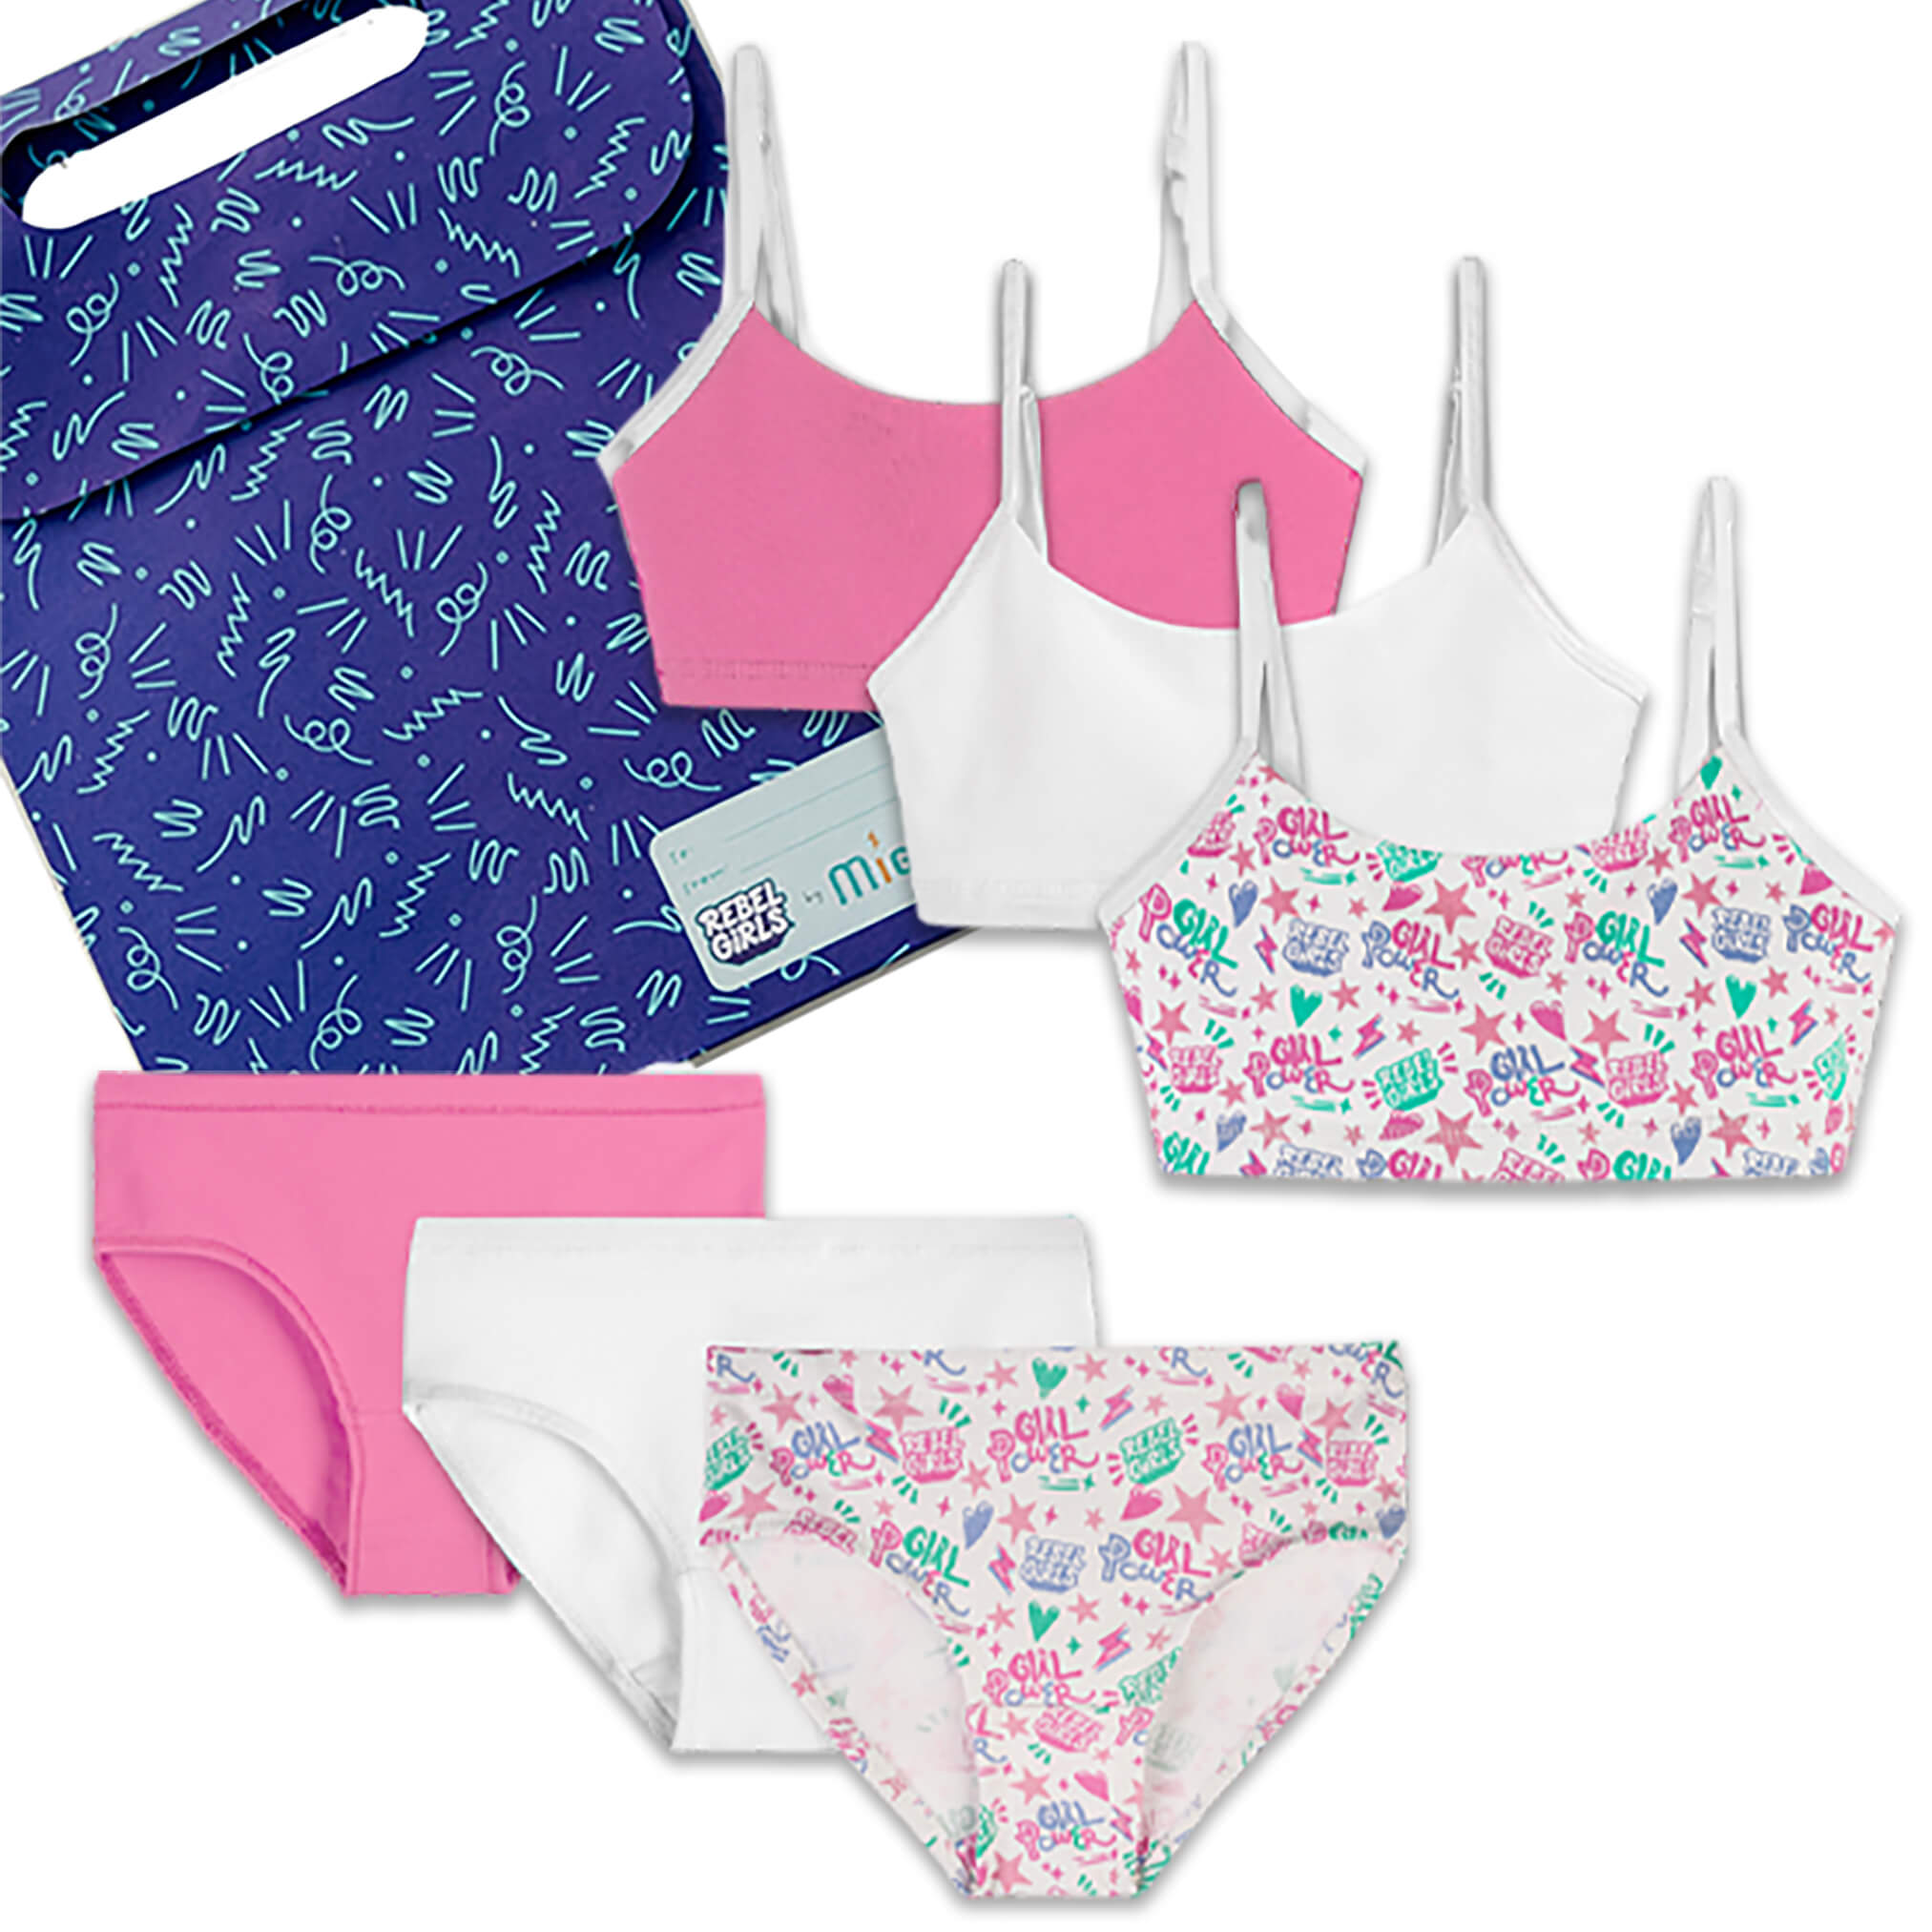 Rebel Girls Organic Cotton Bralette + Underwear 6-Piece Gift Set - Mightly